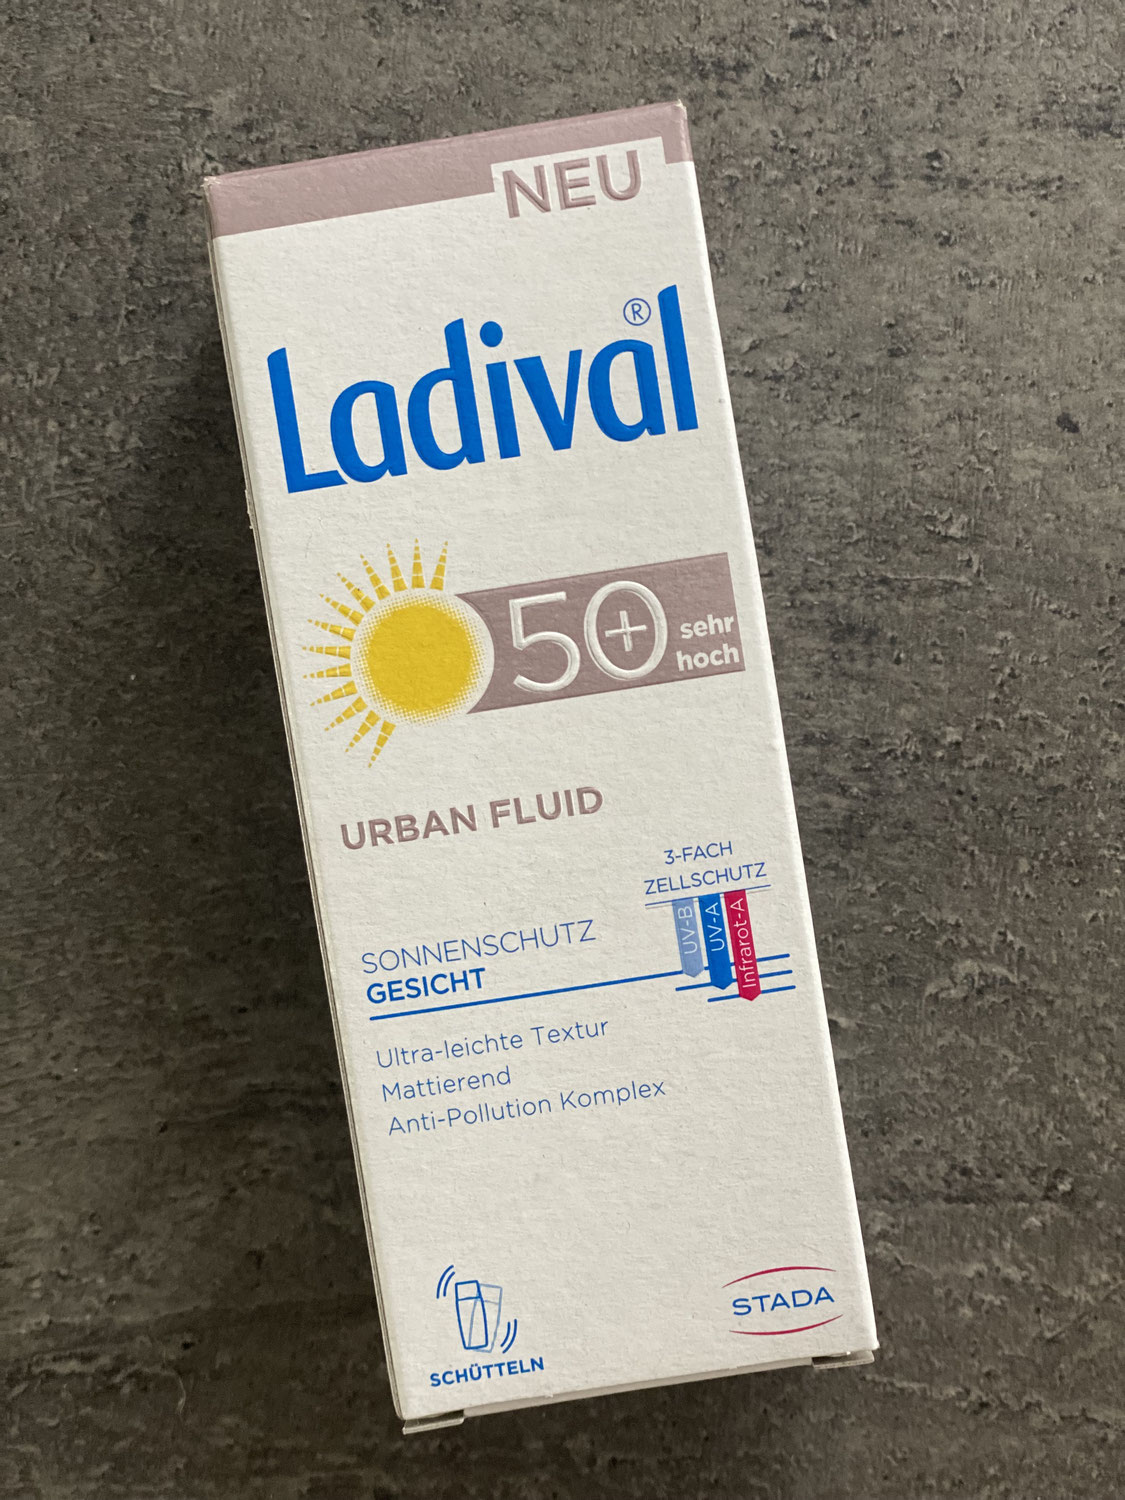 Produkttest - Ladival Urban Fluid LSF 50+